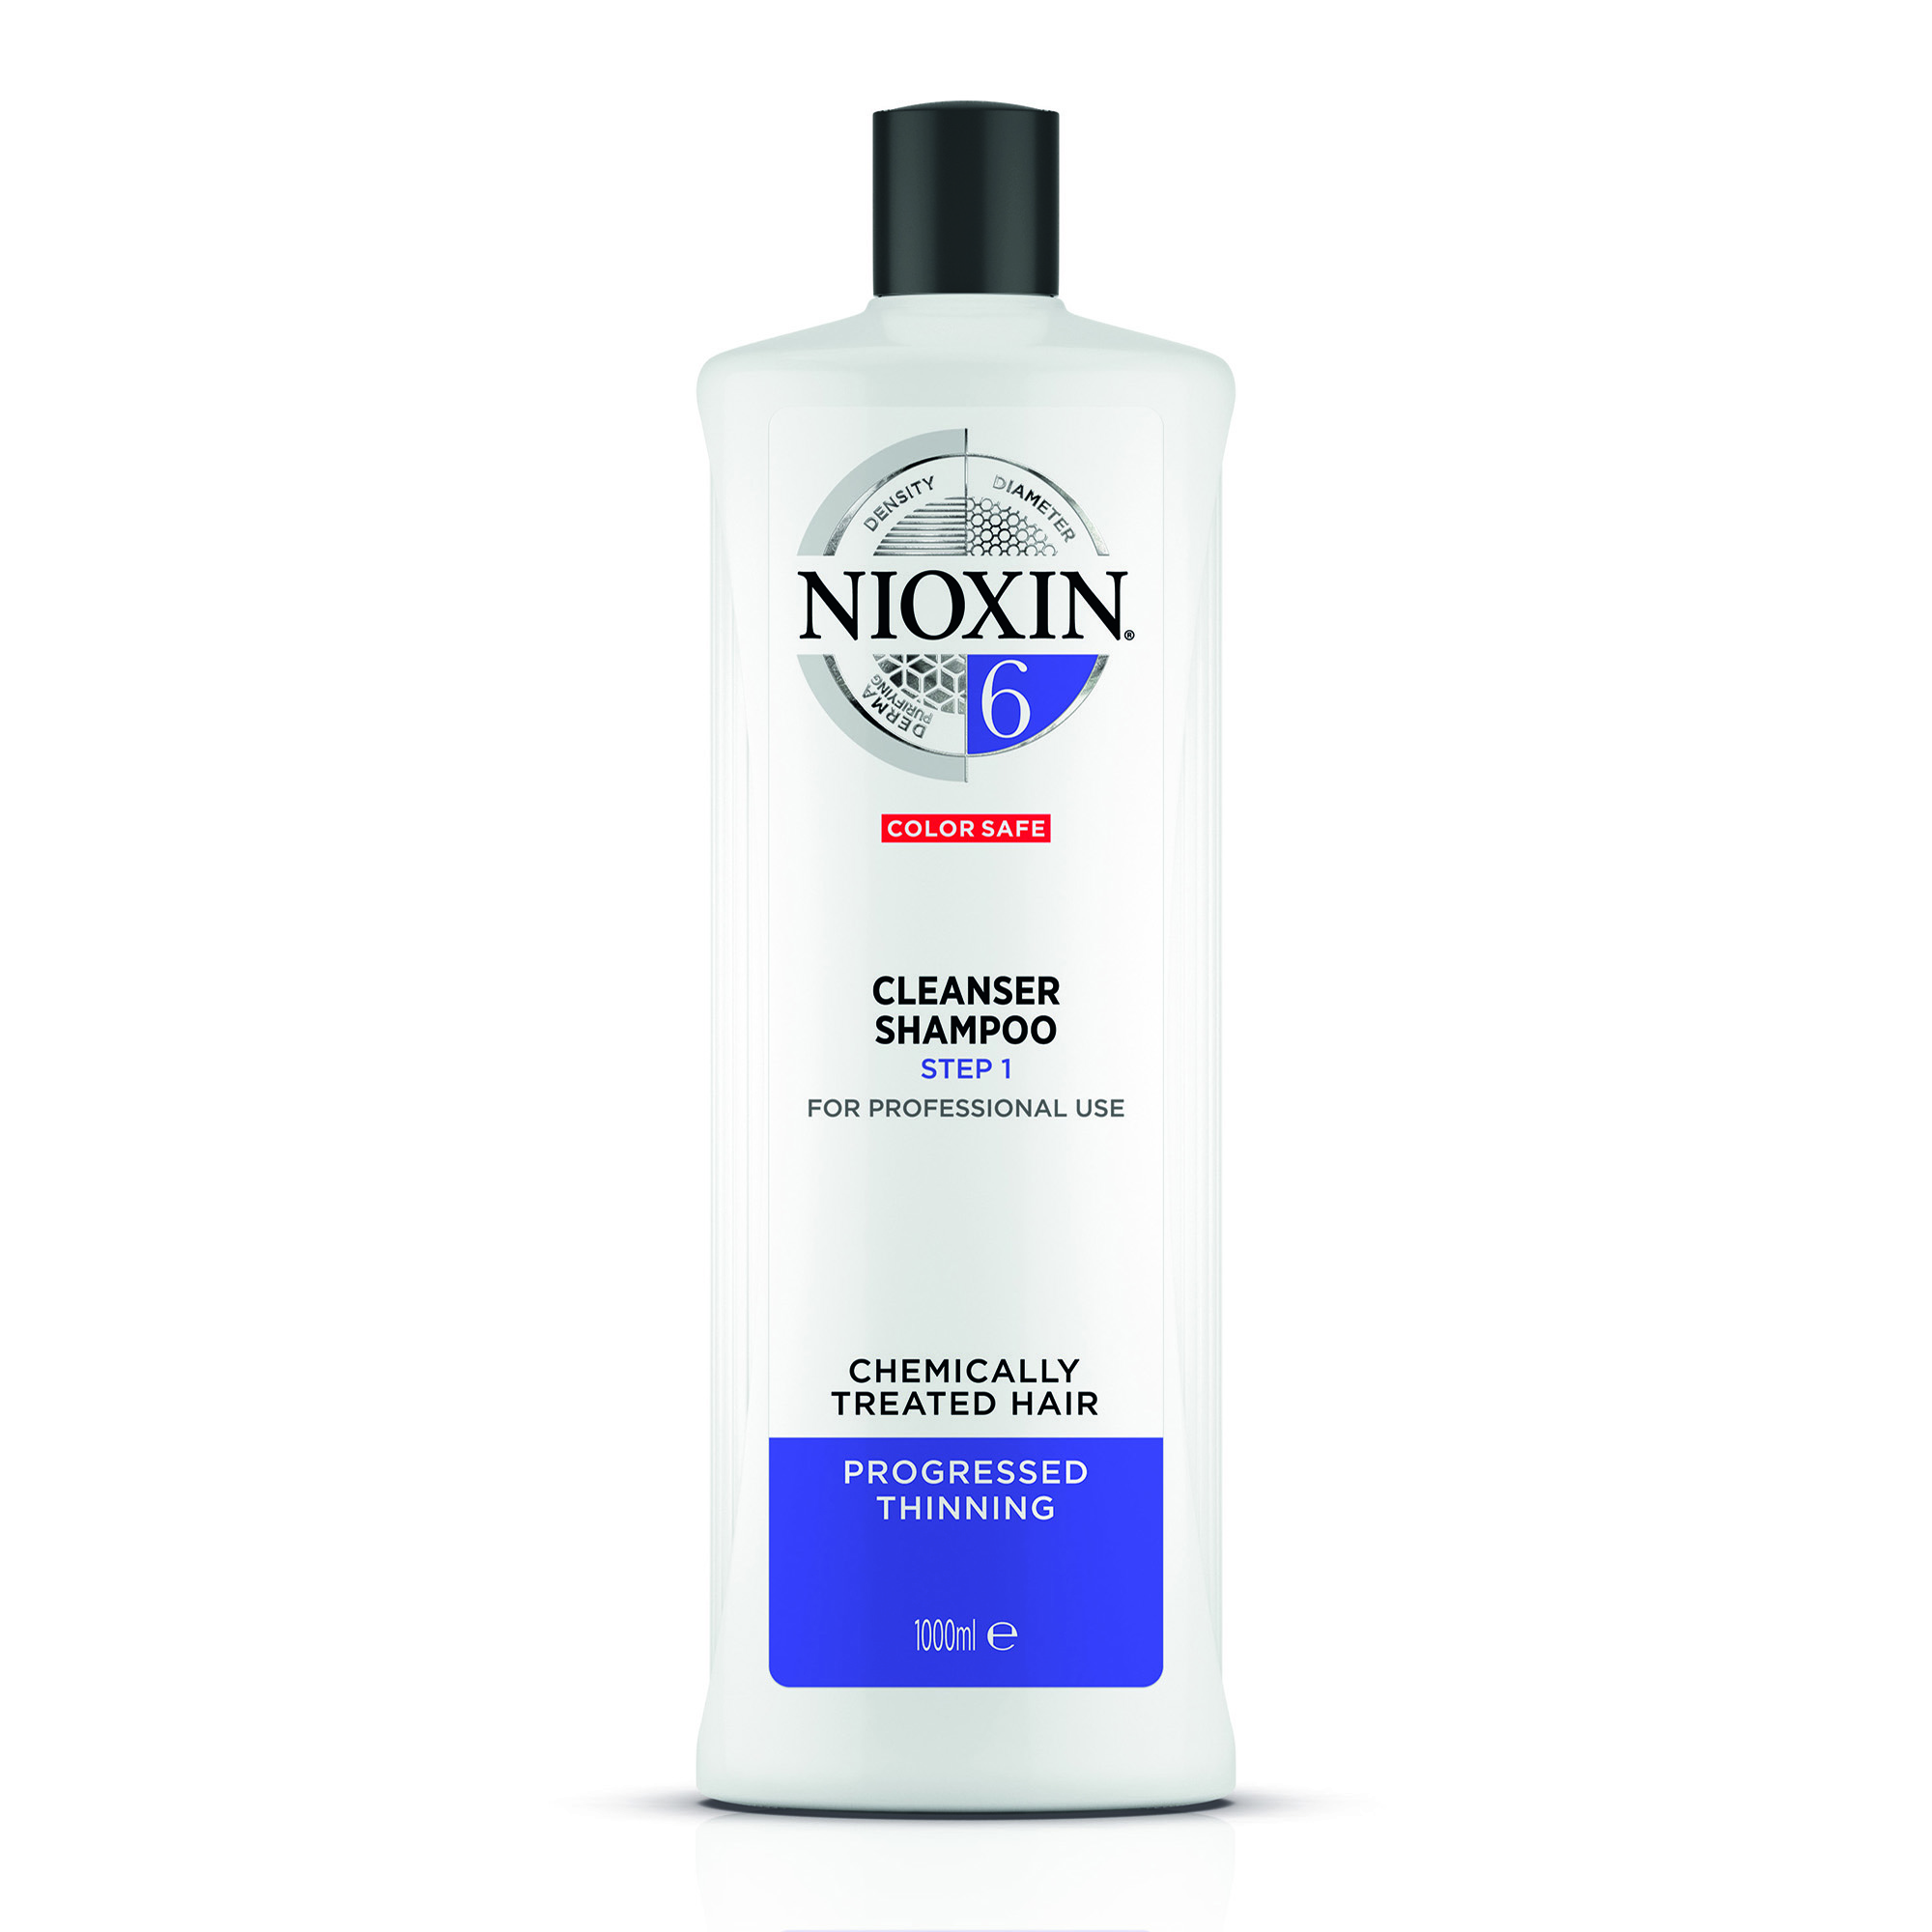 NIOXIN Шампунь очищающий для заметно редеющих волос, Система 6, 1000 мл очищающий шампунь система 2 81630627 300 мл